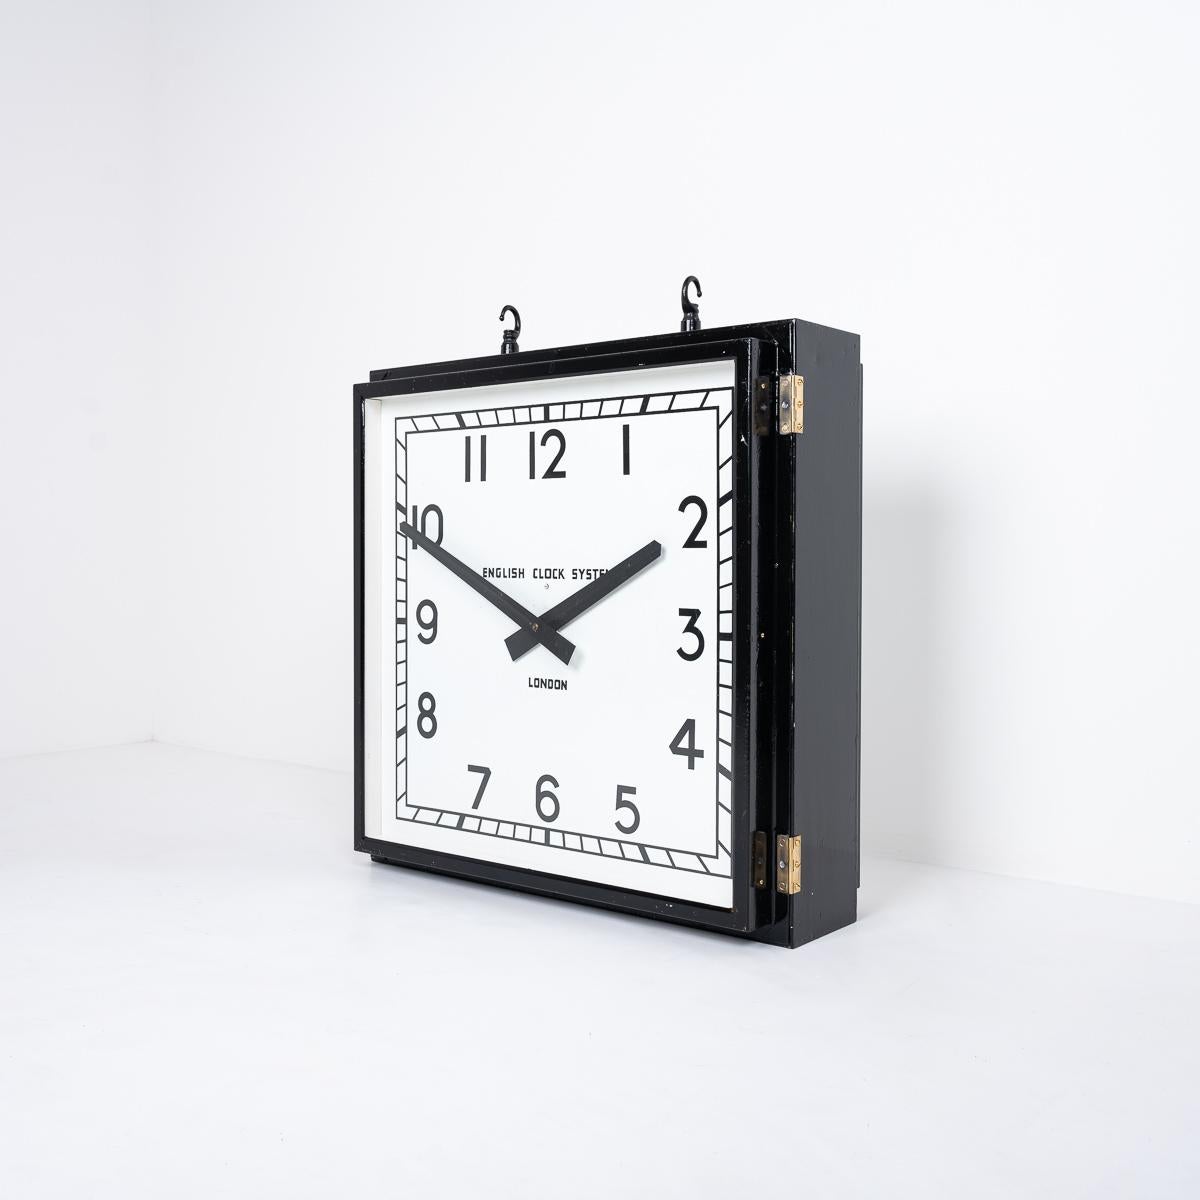 Riesige aufgearbeitete industrielle doppelseitige Fabrikuhr
Eine originale doppelseitige Fabrikuhr mit Hängeuhr.

Gefertigt von English Clock System, London, England, um 1950.

Die Uhr ist professionell restauriert worden.

Alles ist noch original,